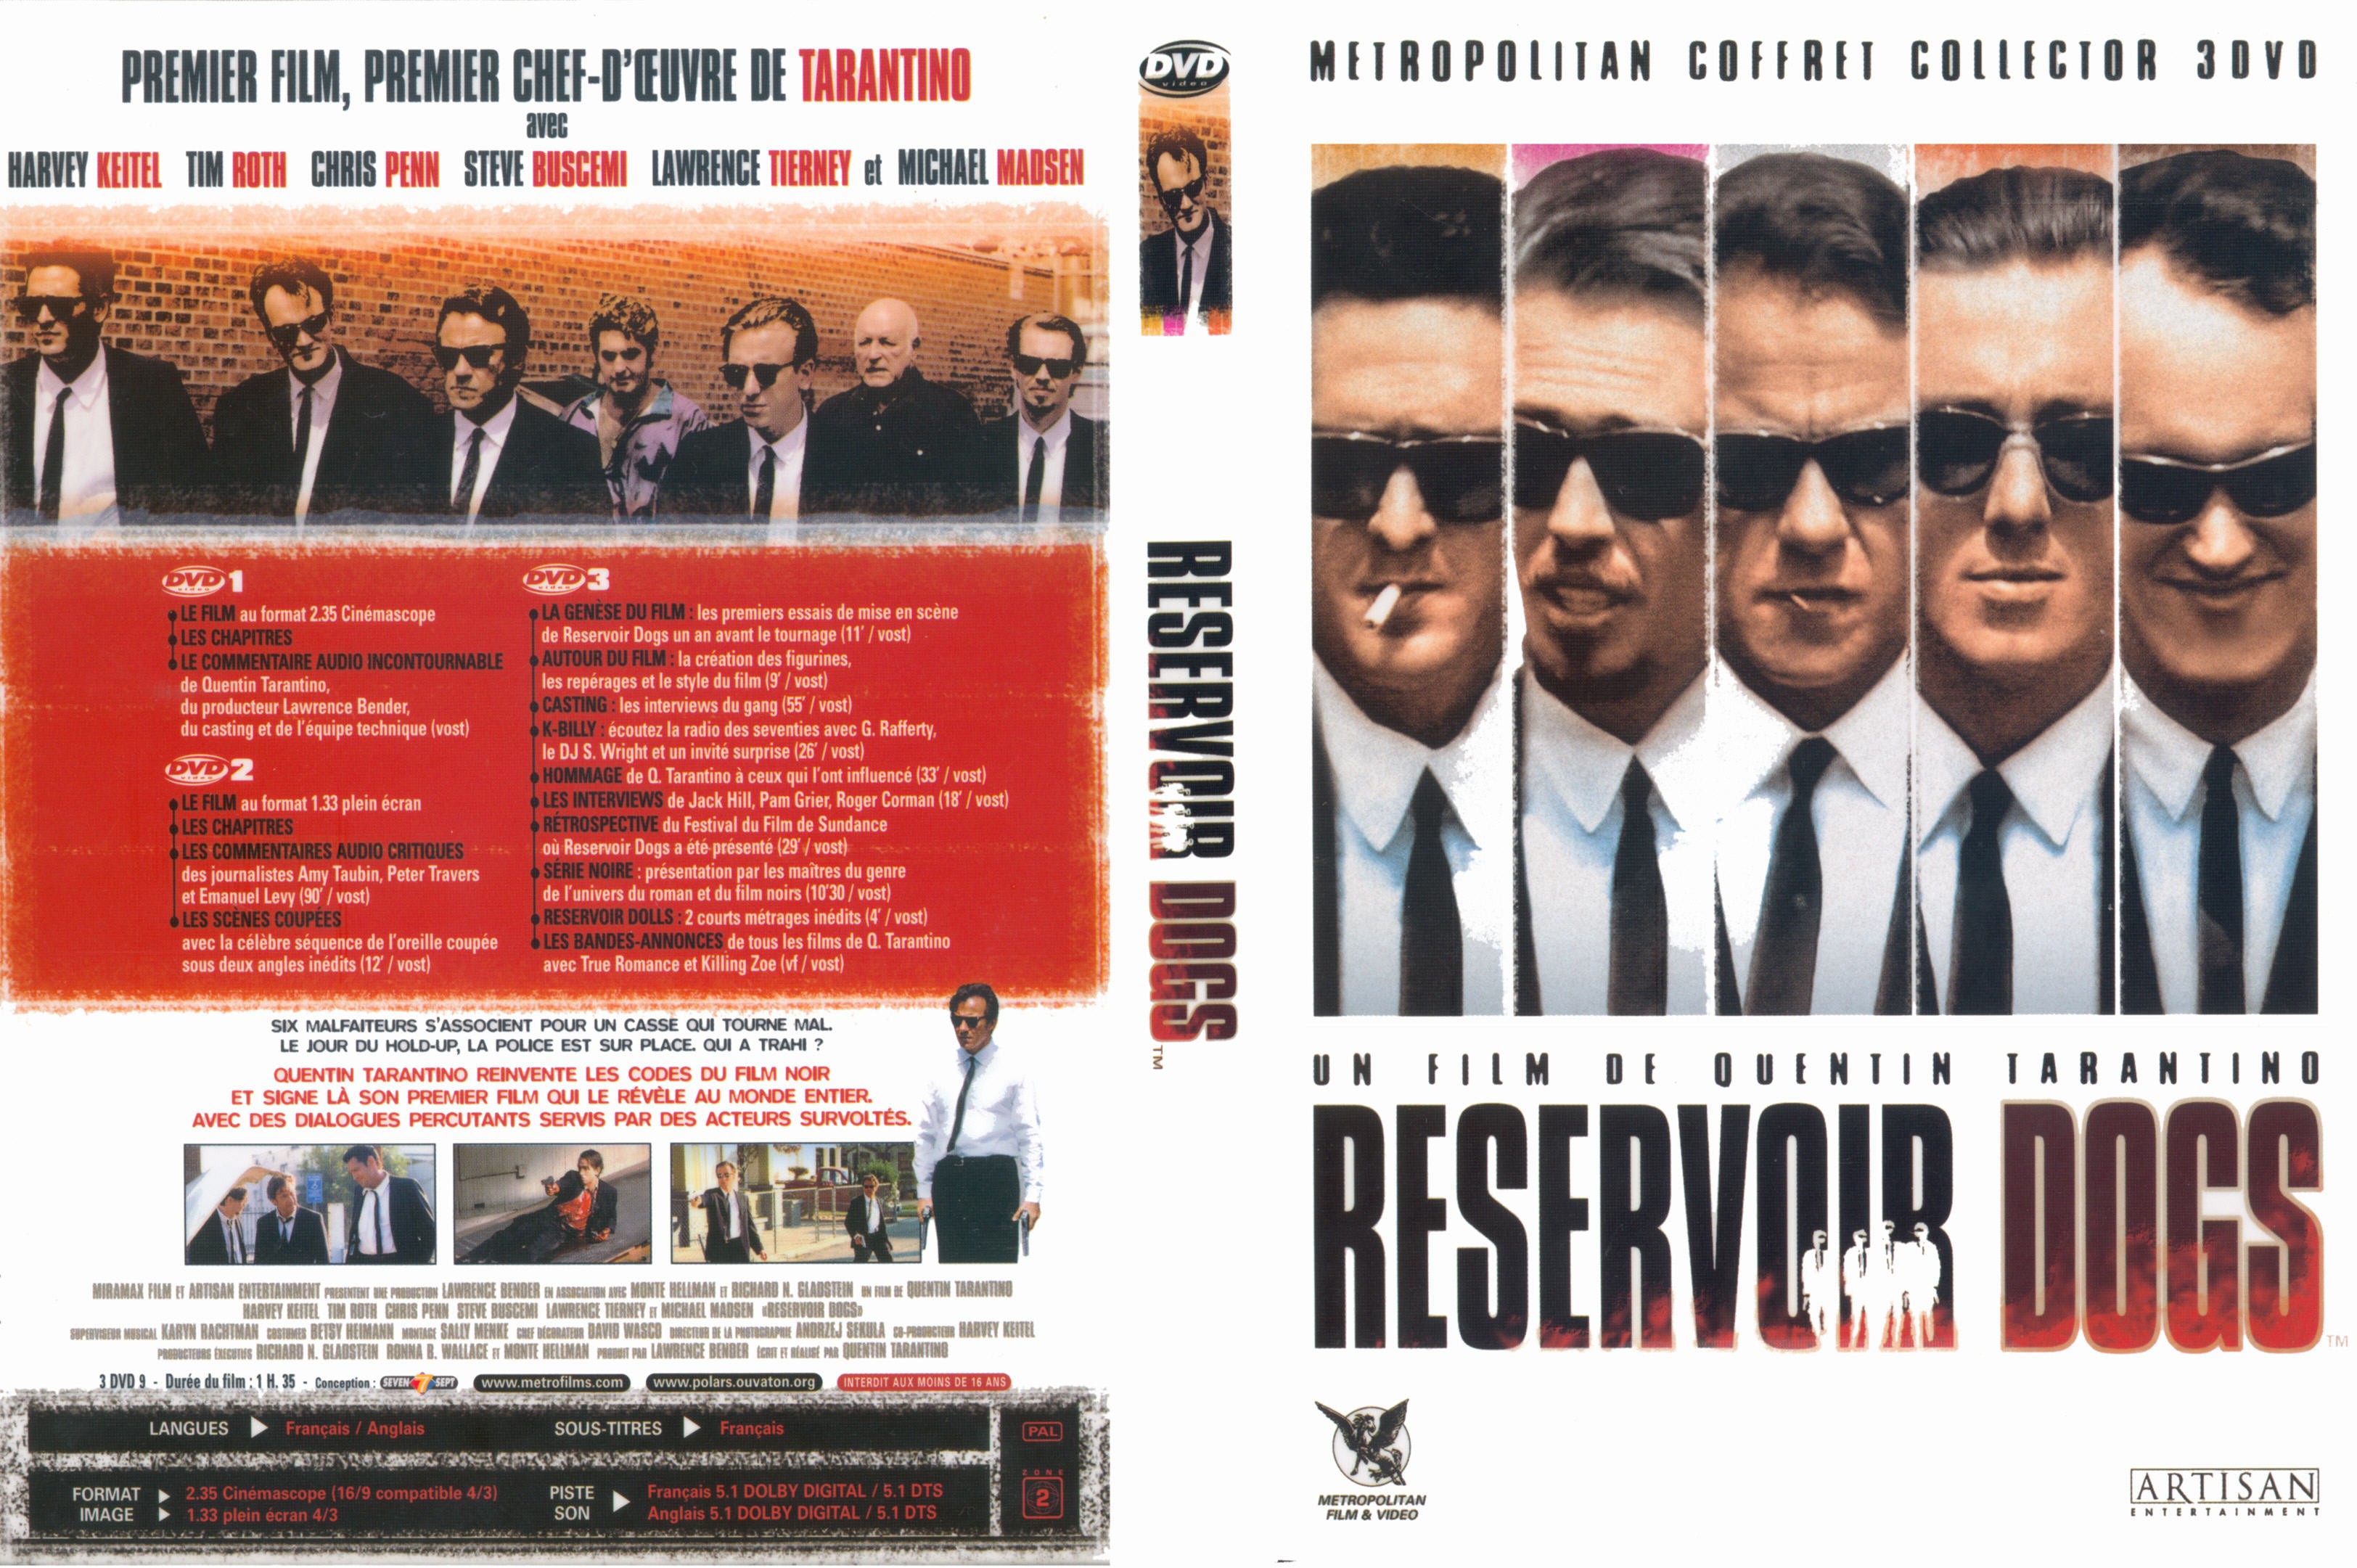 Jaquette DVD Reservoir dogs v2